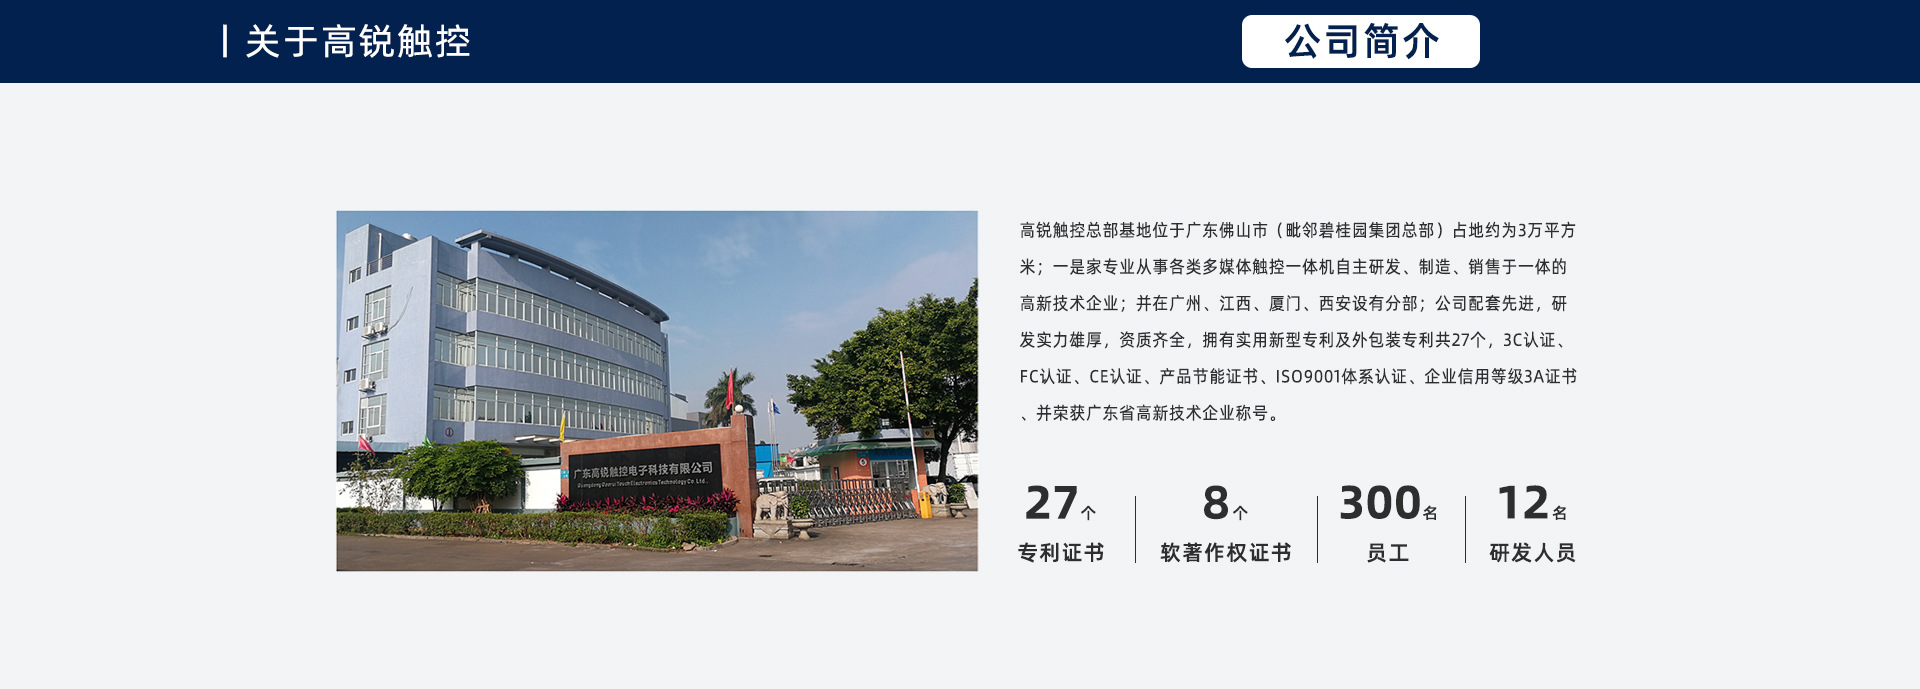 广州高锐信息科技有限公司